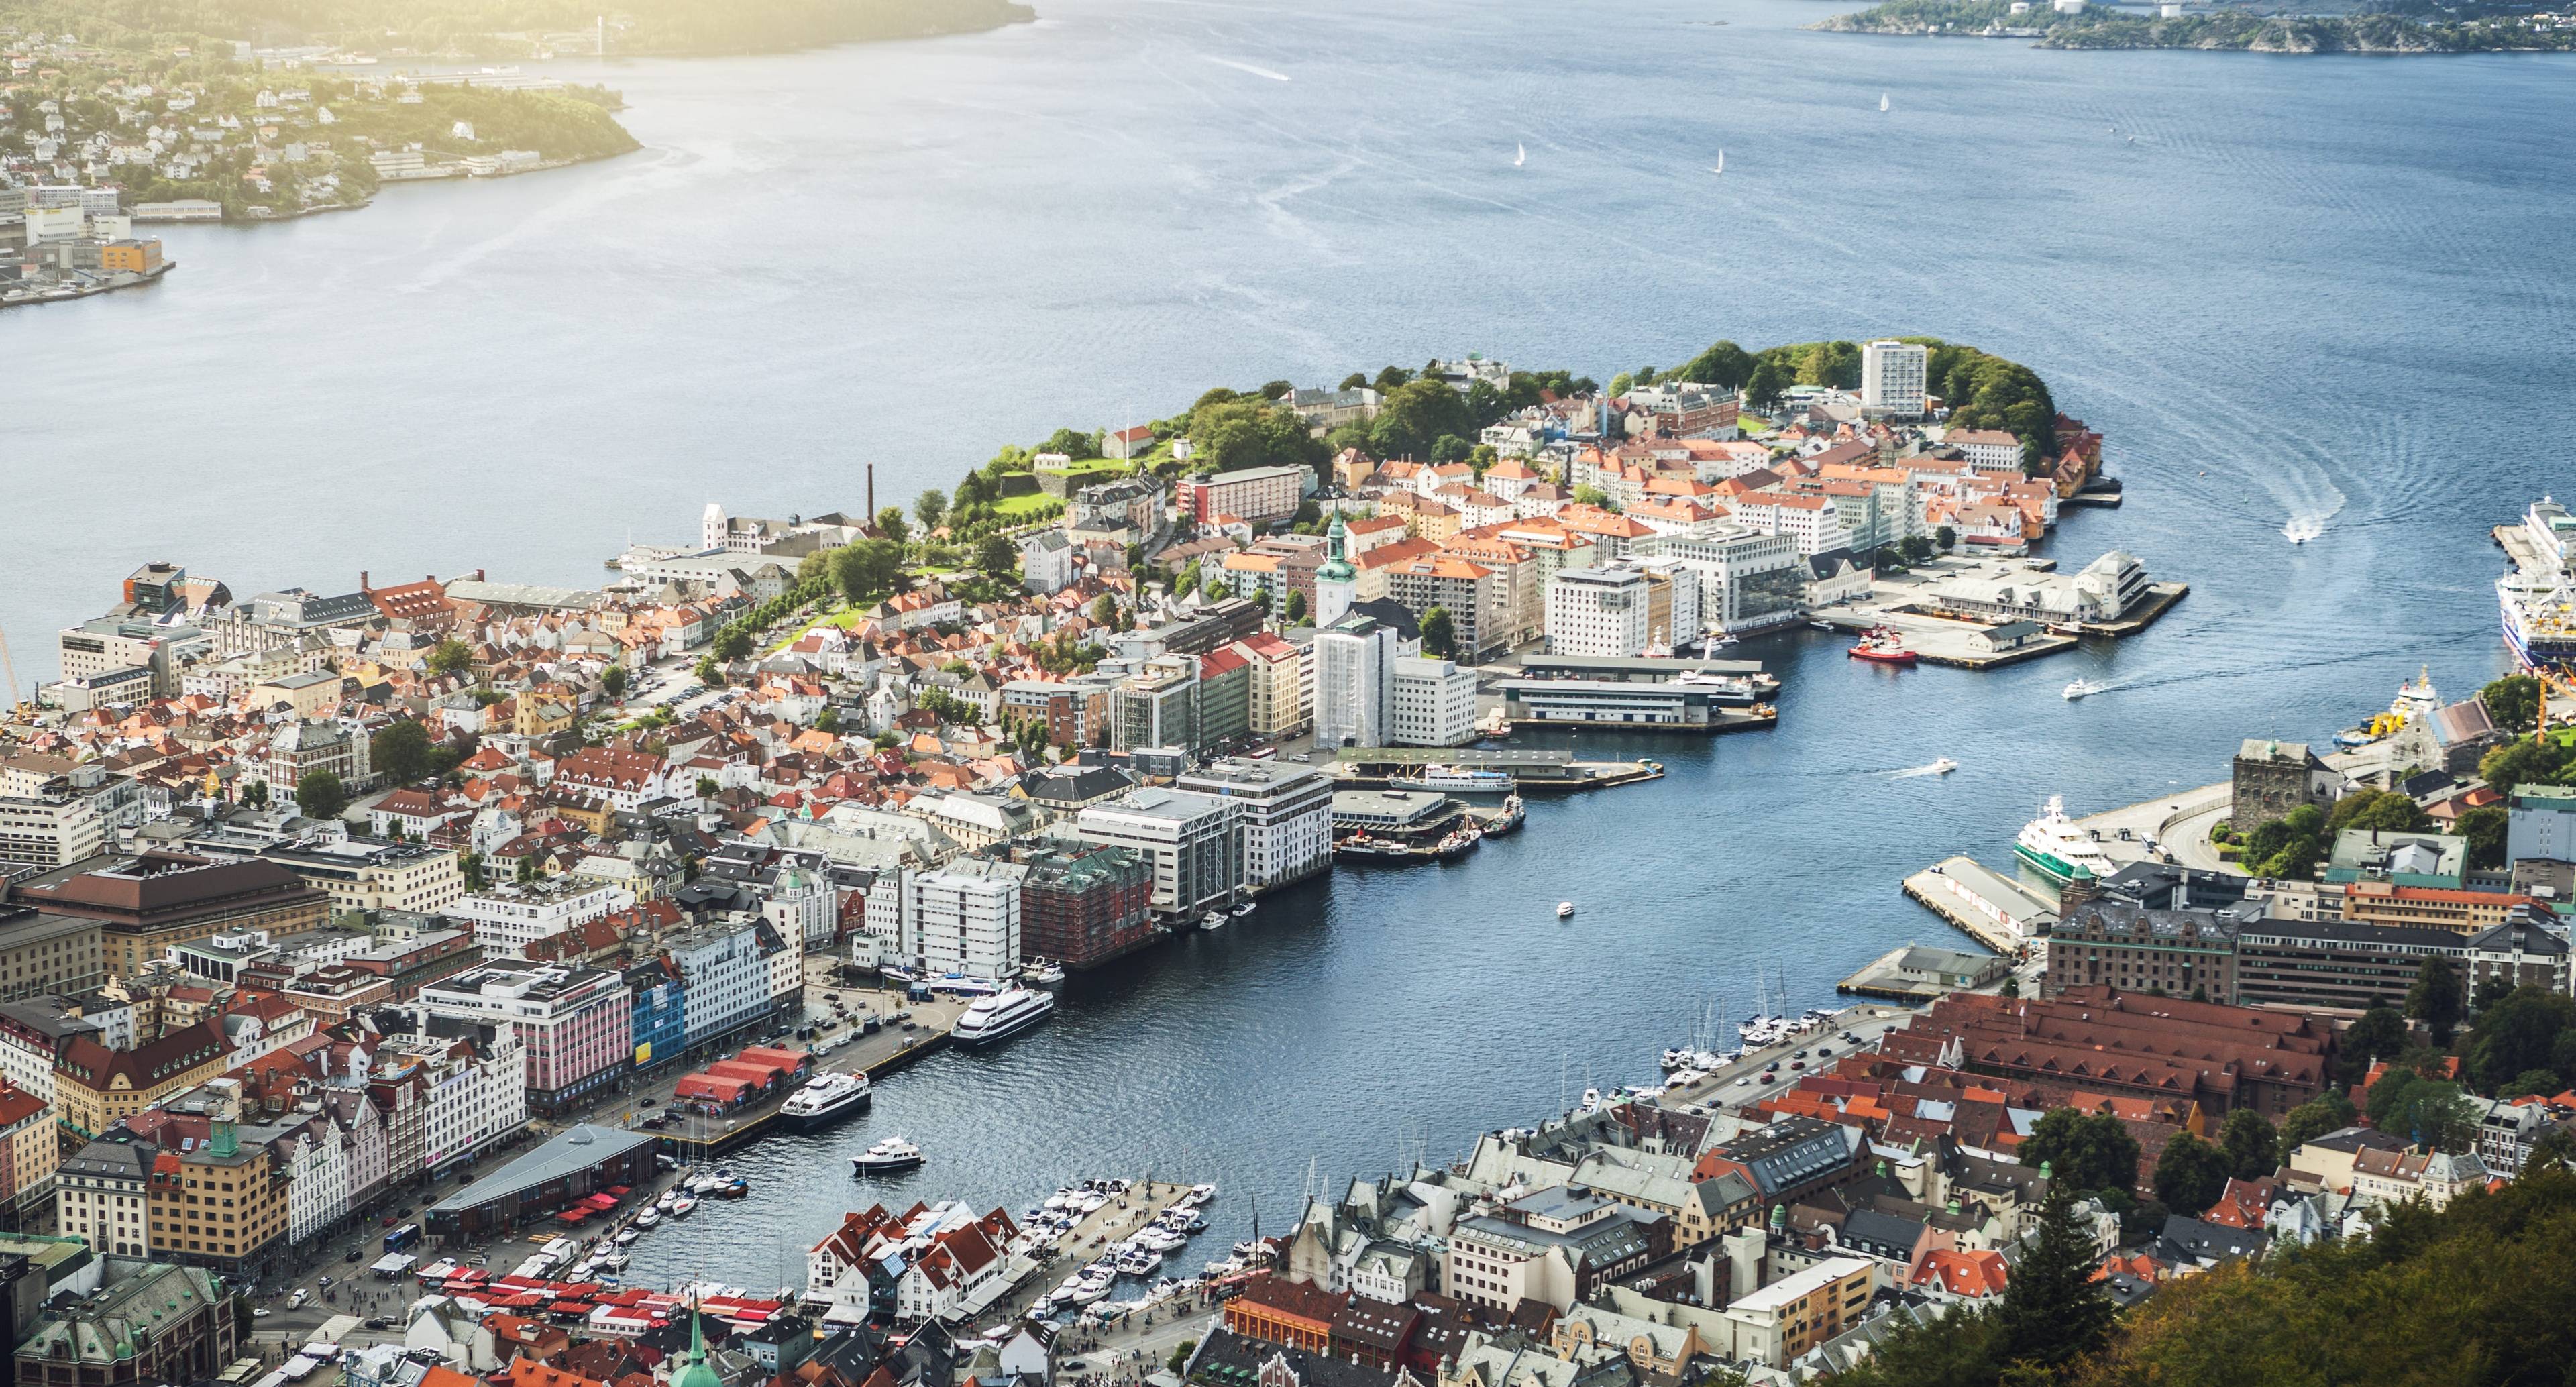 Откройте для себя удивительные горы, окружающие город Берген, отправившись в это приключение вдоль знаменитого побережья Норвегии.